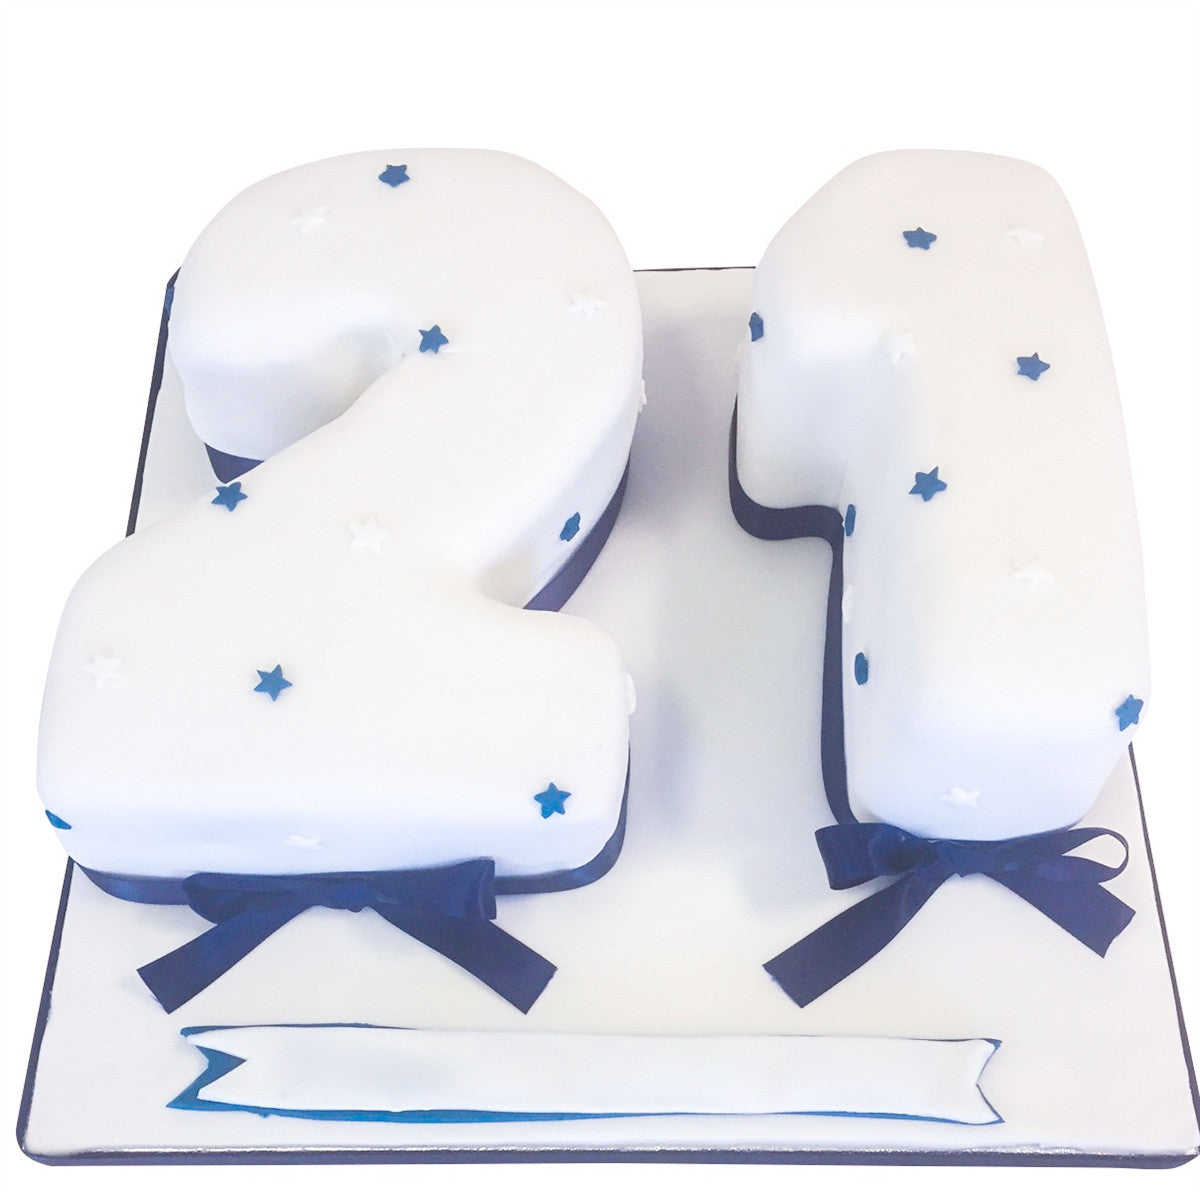 5 Epic 21st Birthday Cake Ideas | White Spatula